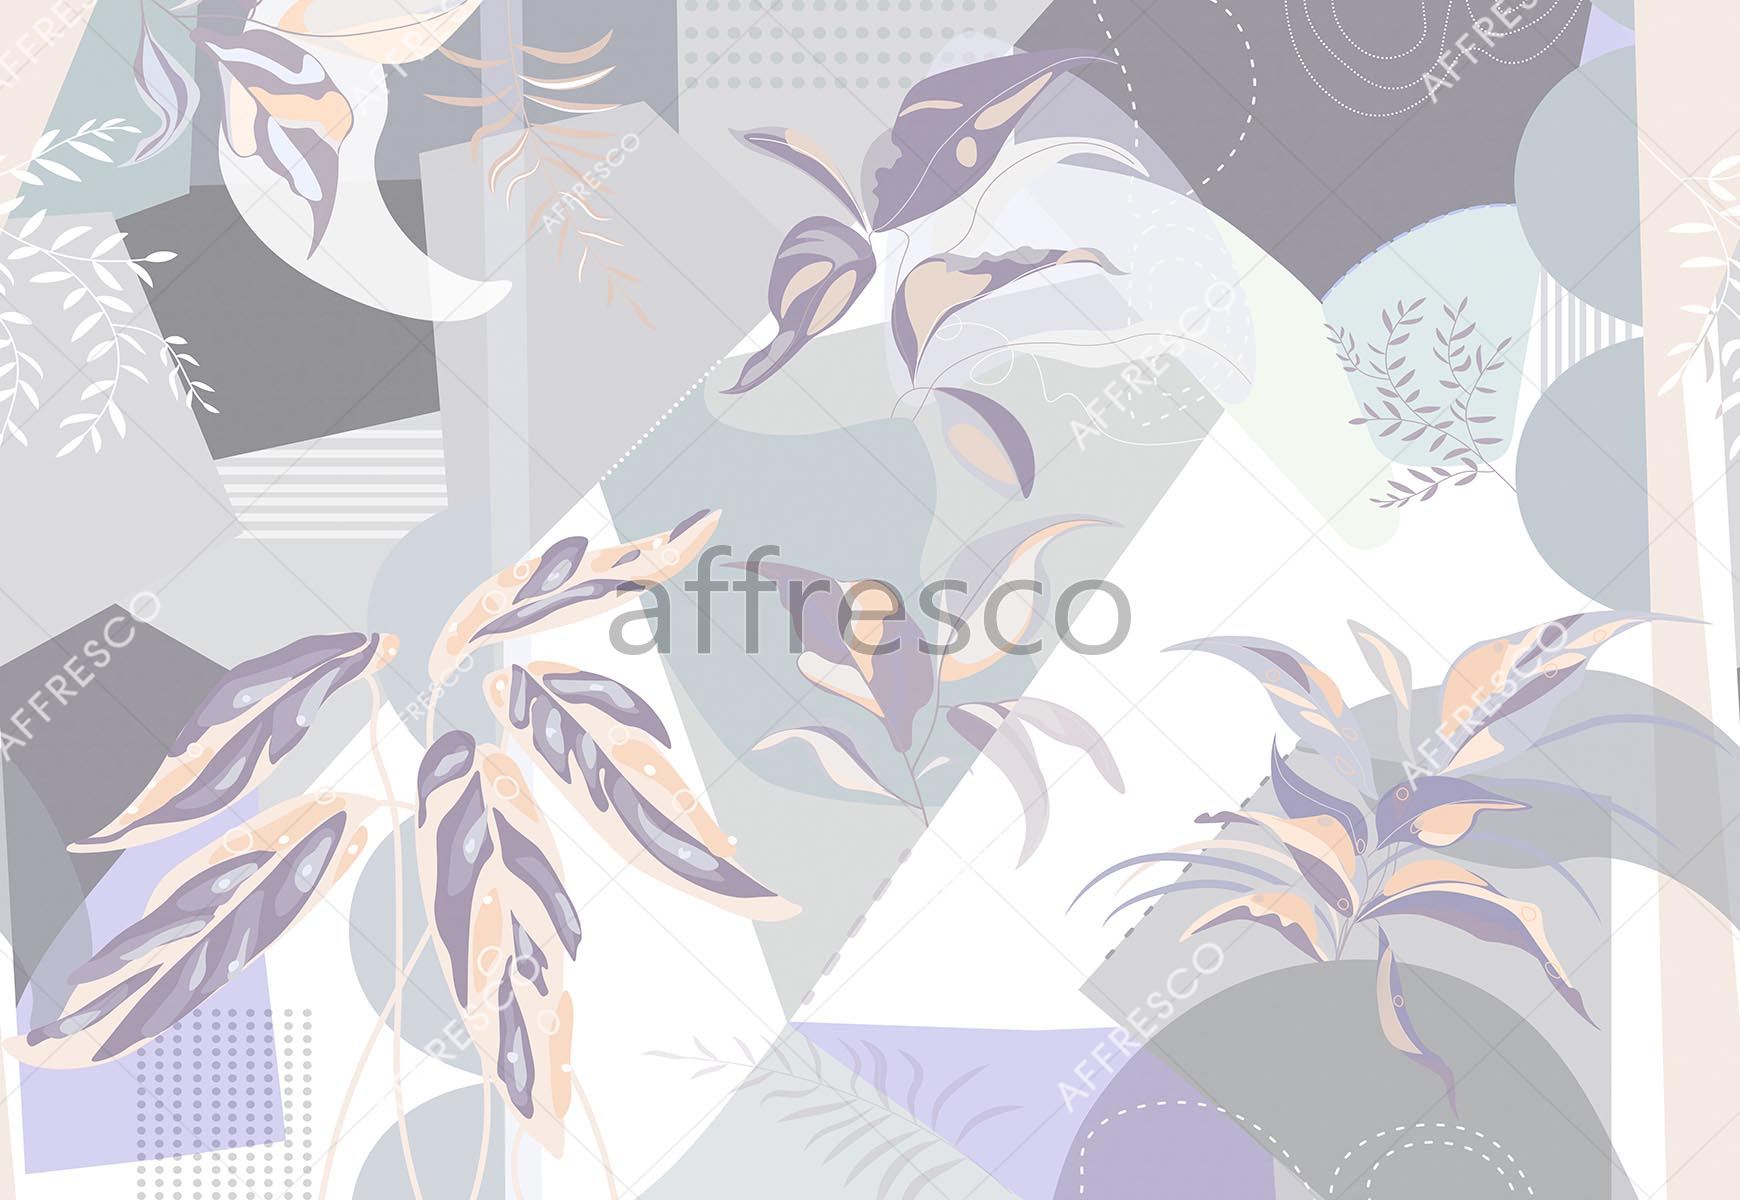 ID139451 | Graphics arts & Ornaments |  | Affresco Factory